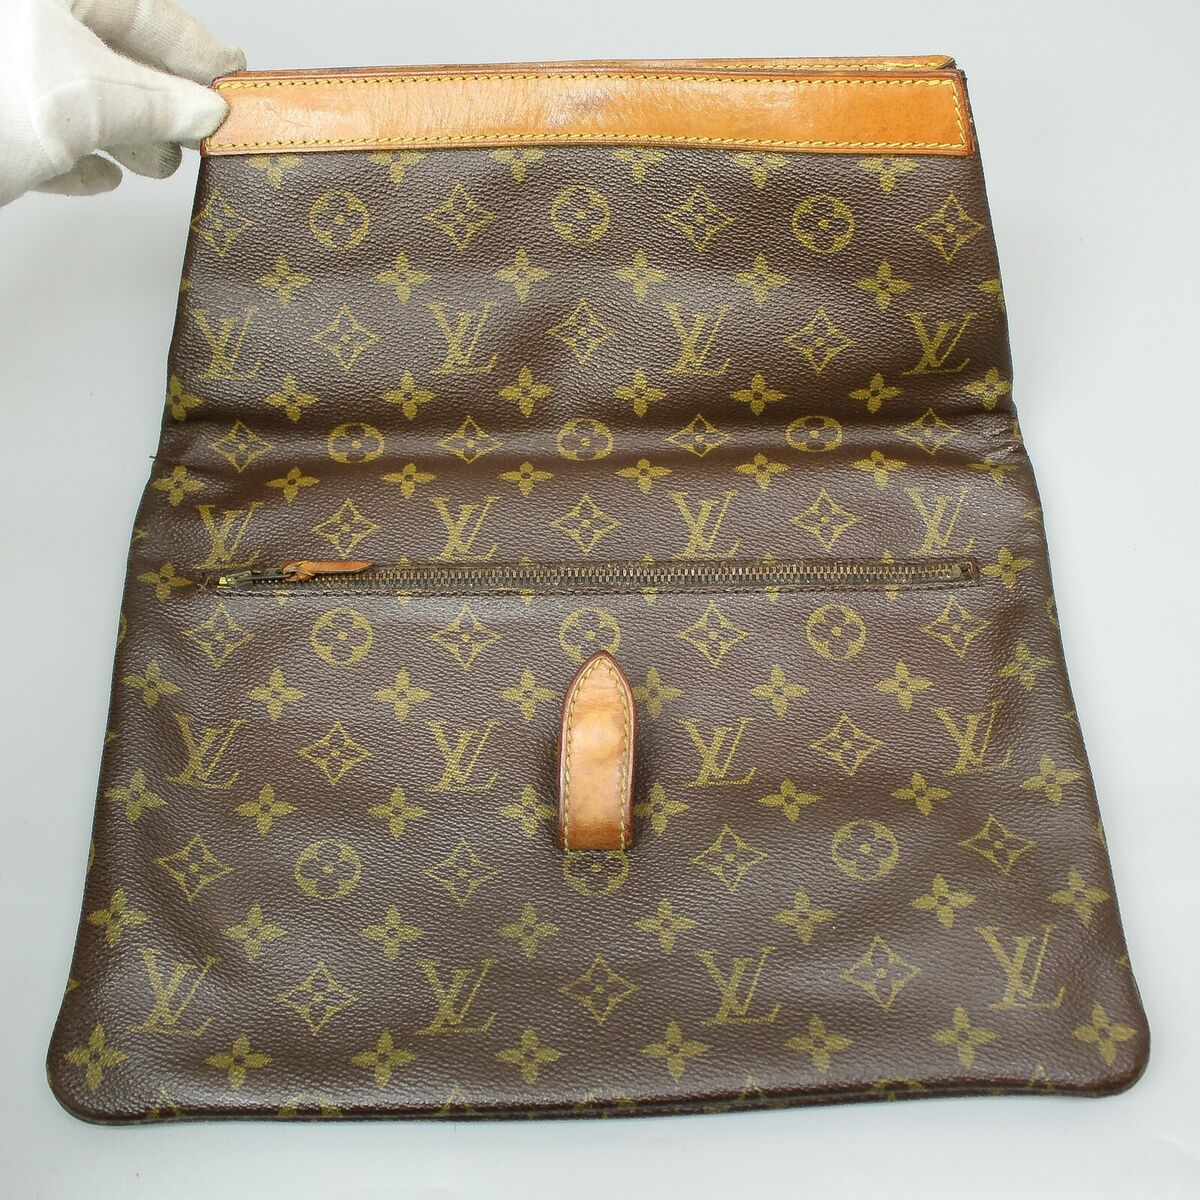 LOUIS VUITTON Old Model Vintage Clutch Bag Purse Monogram Brown